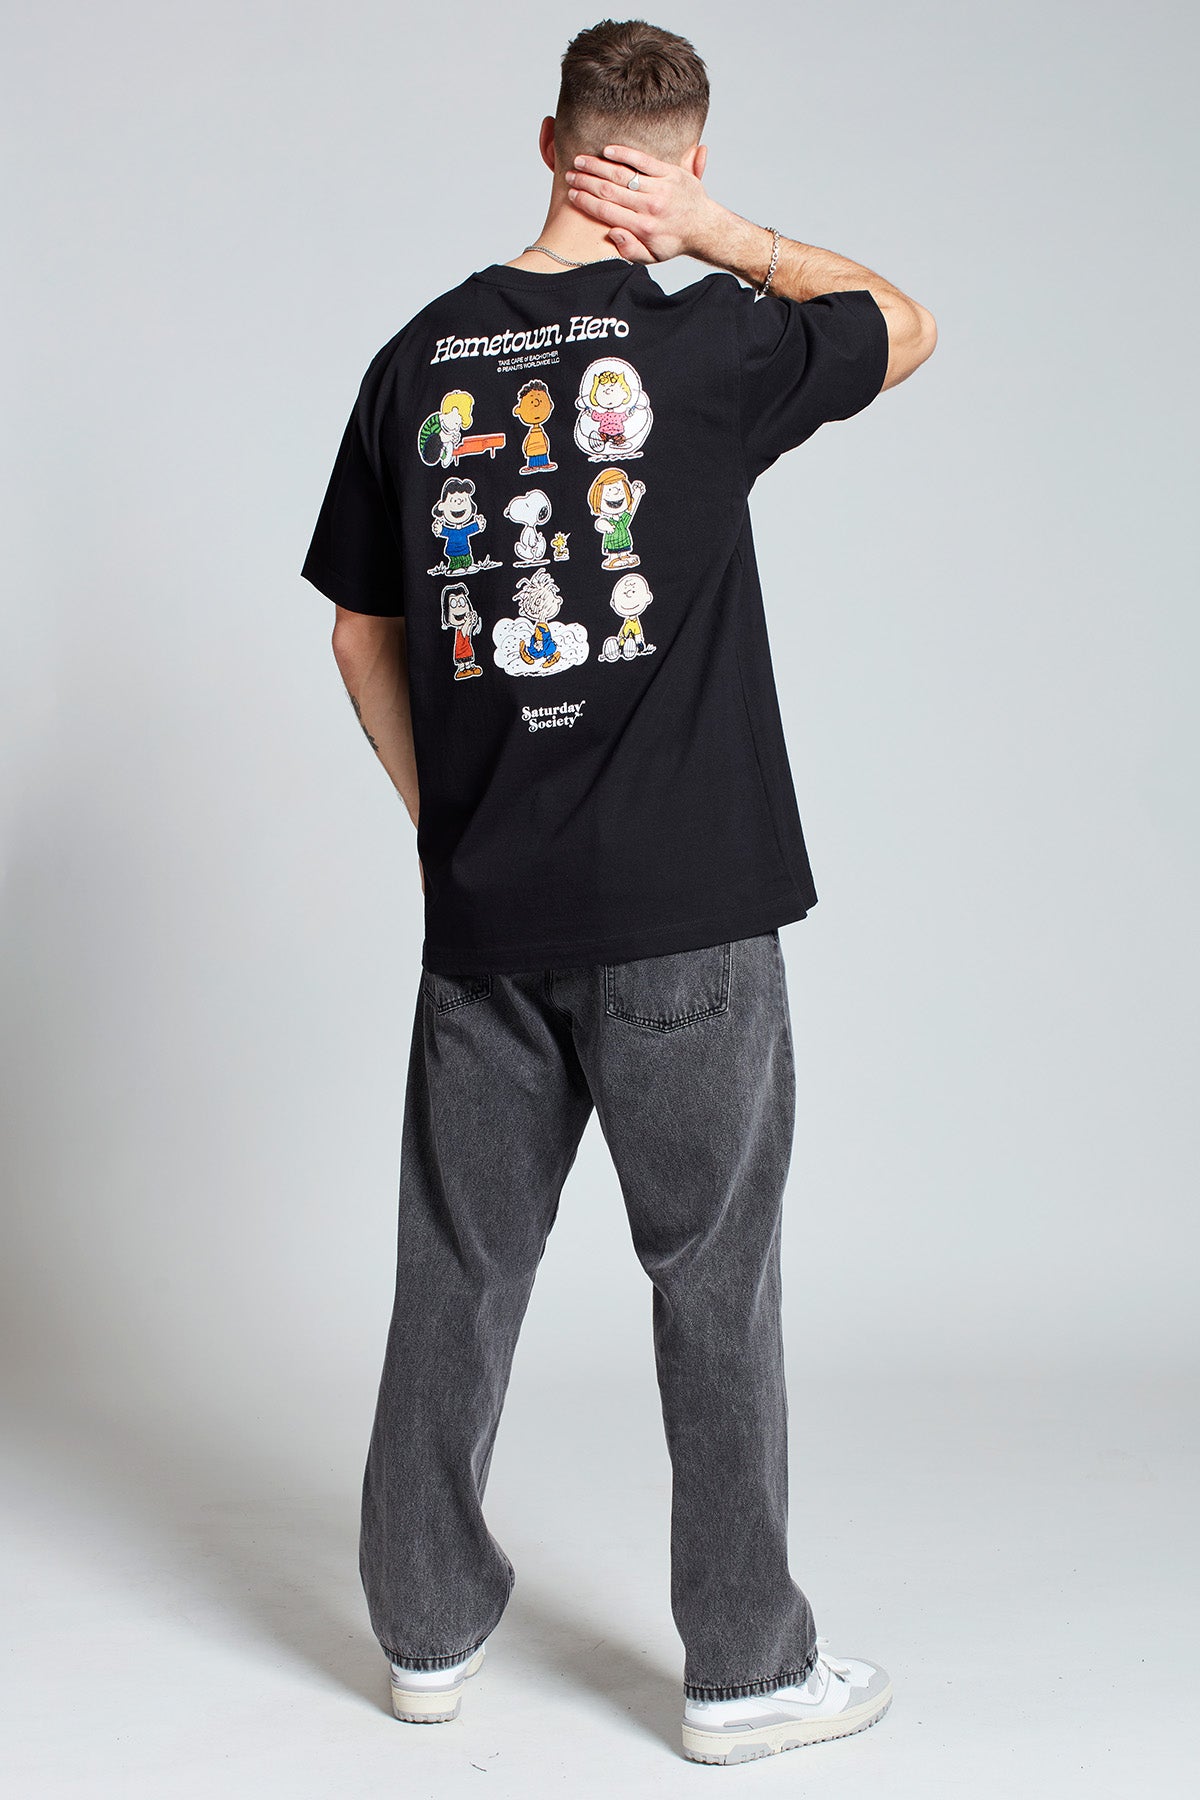 Snoopy Hometown Hero T-shirt in Black